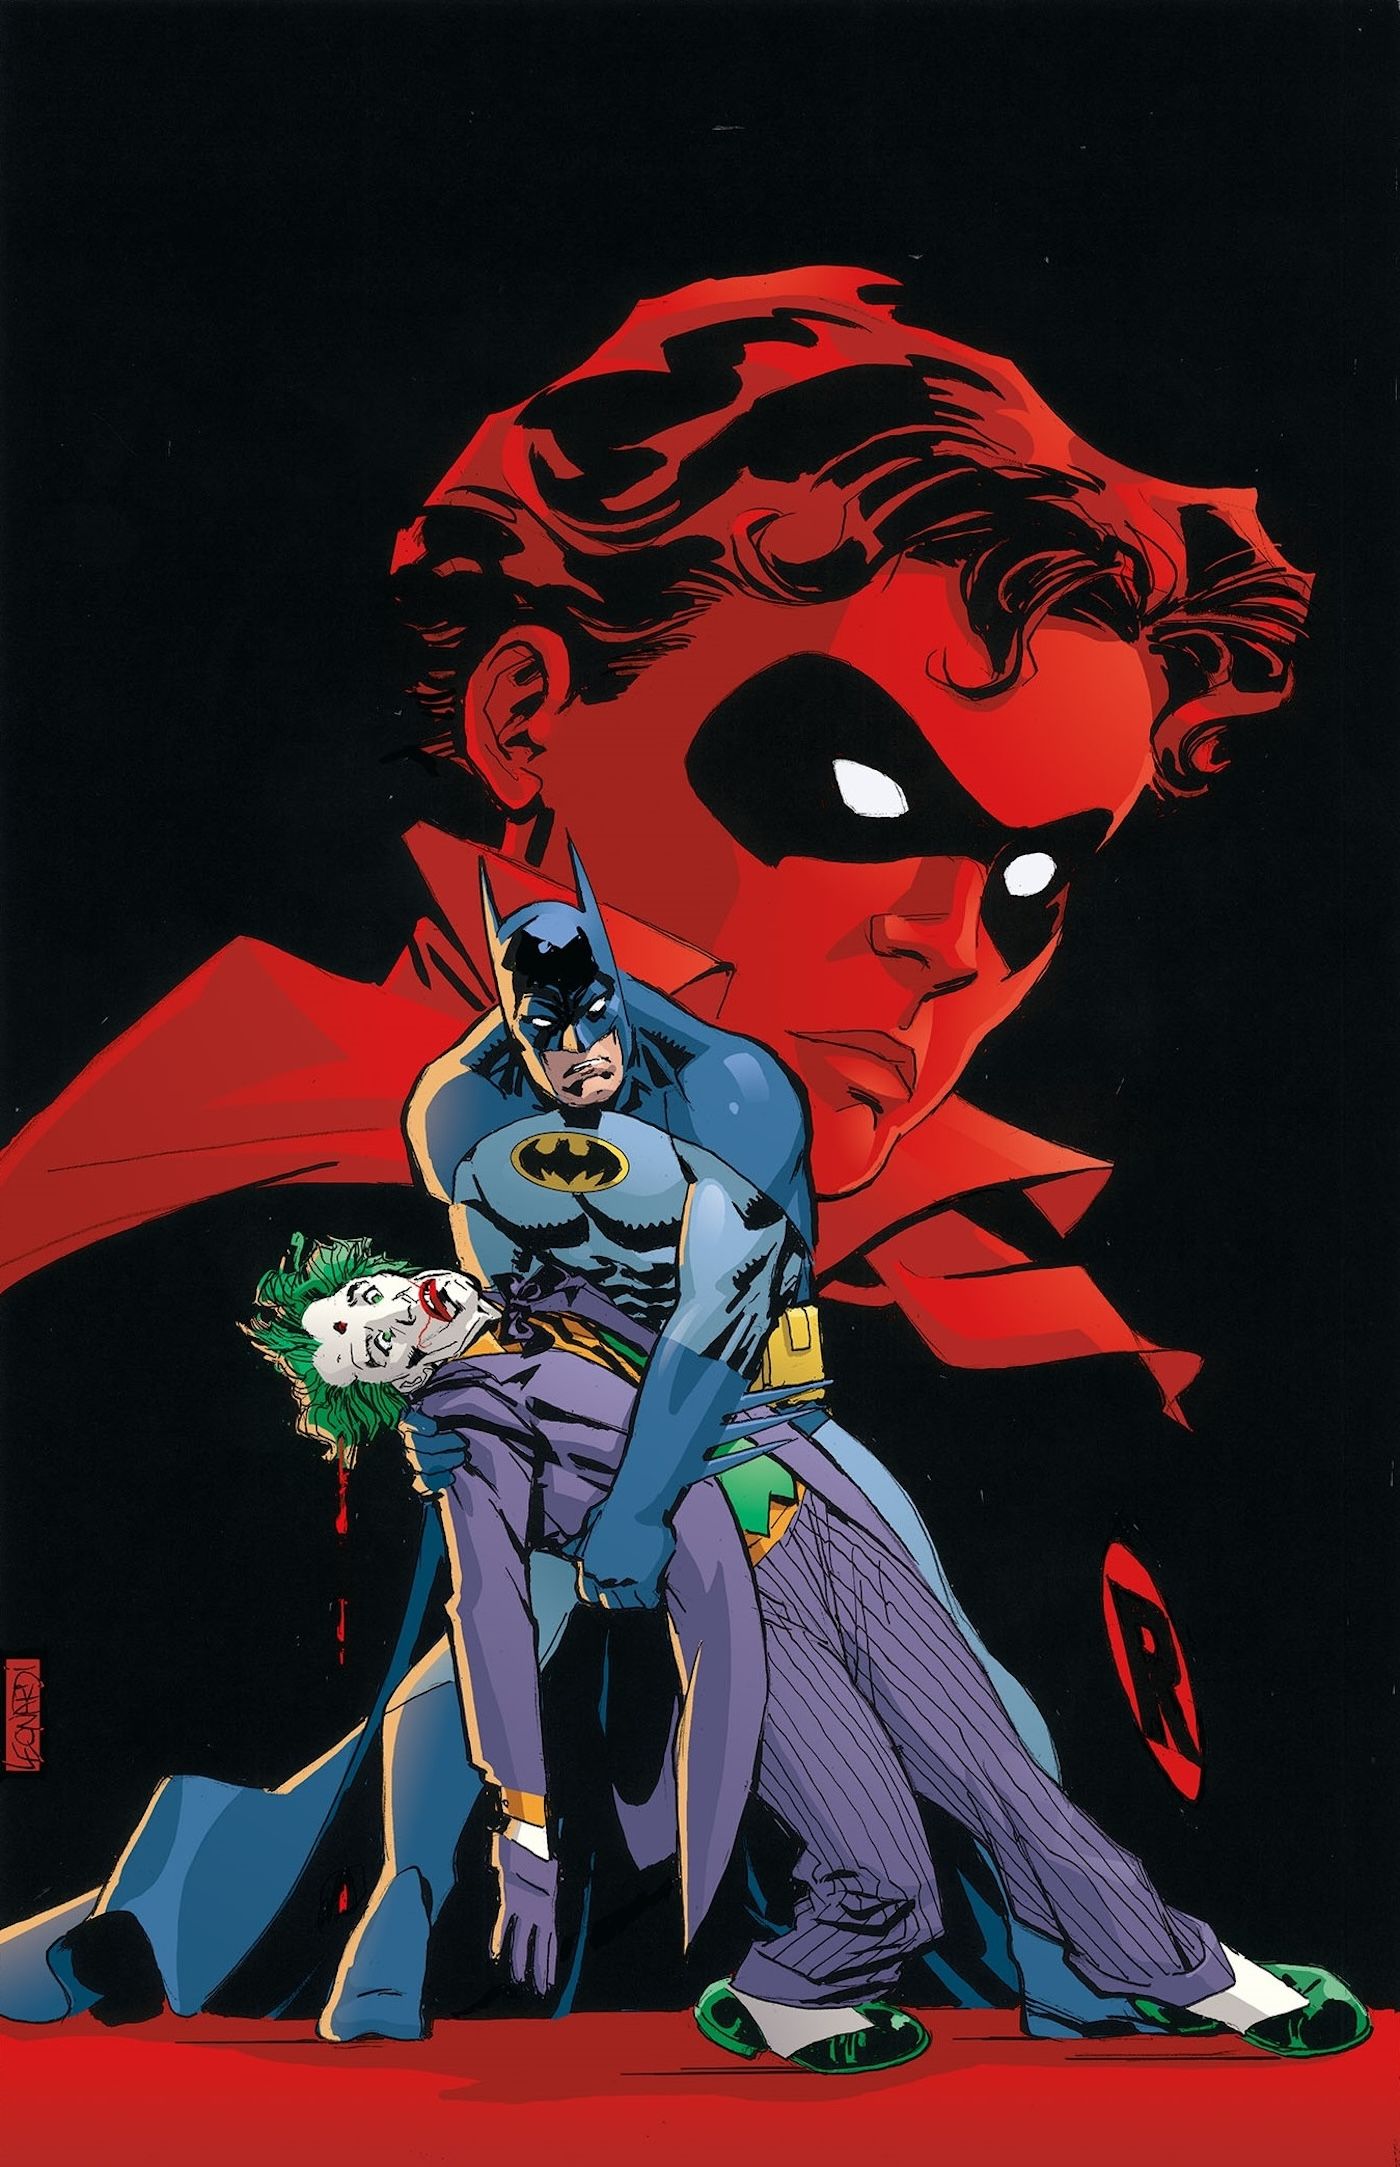 “The Murder of the Joker”: Jason Todd’s Revenge on Joker Totally Rewrites Red Hood Lore